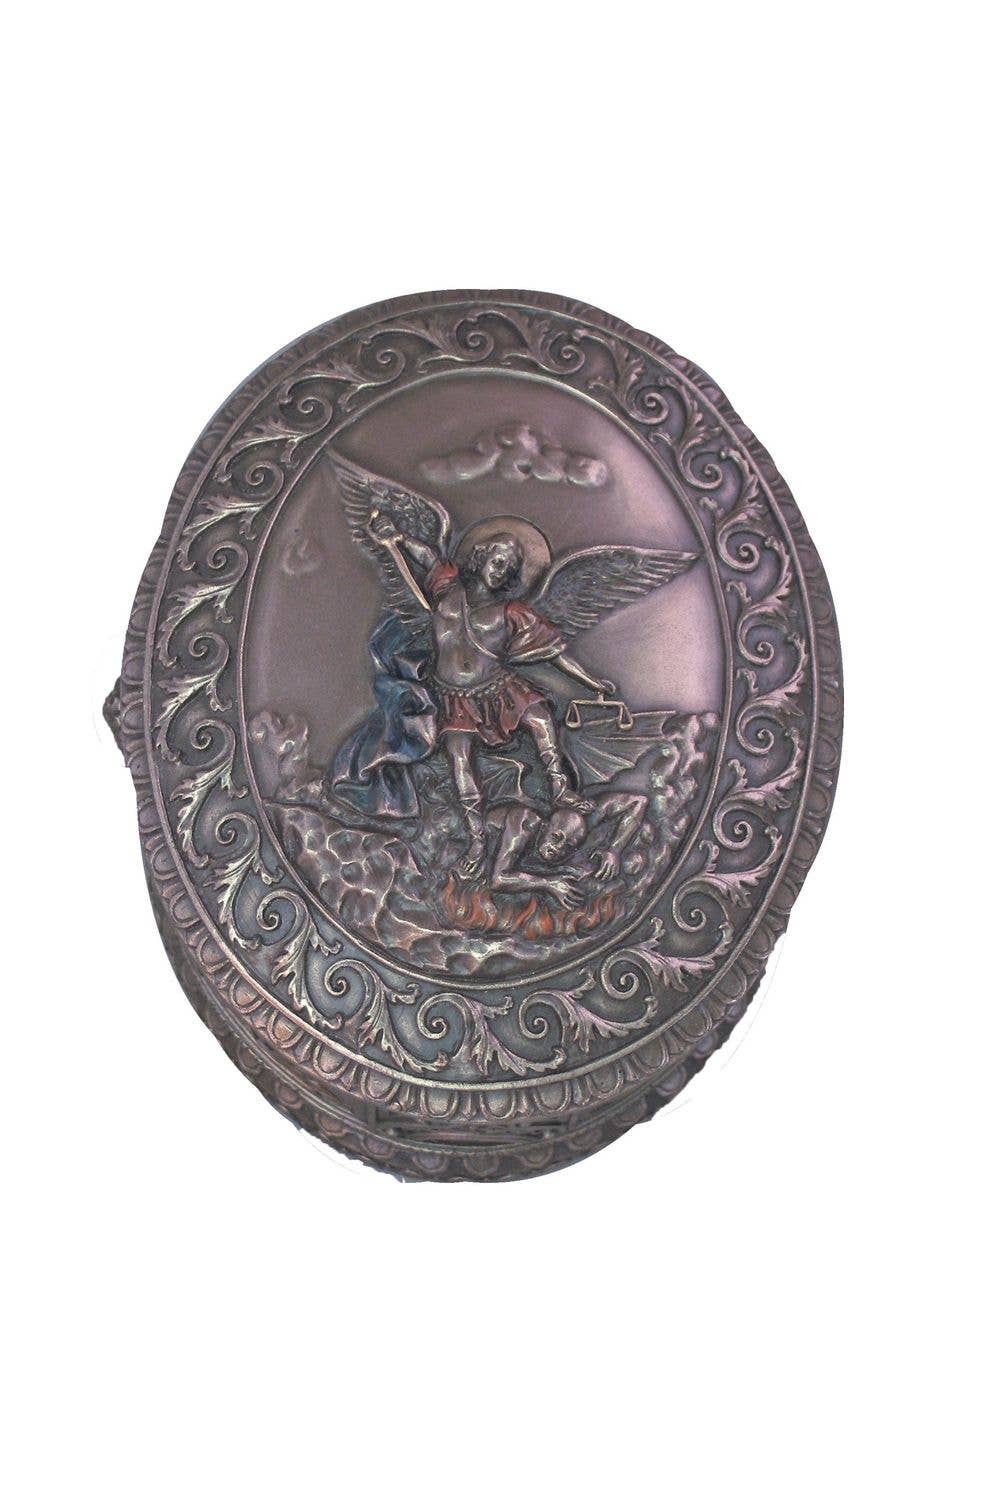 St. Michael Box in Cold Cast Bronze 3.75x4.5"